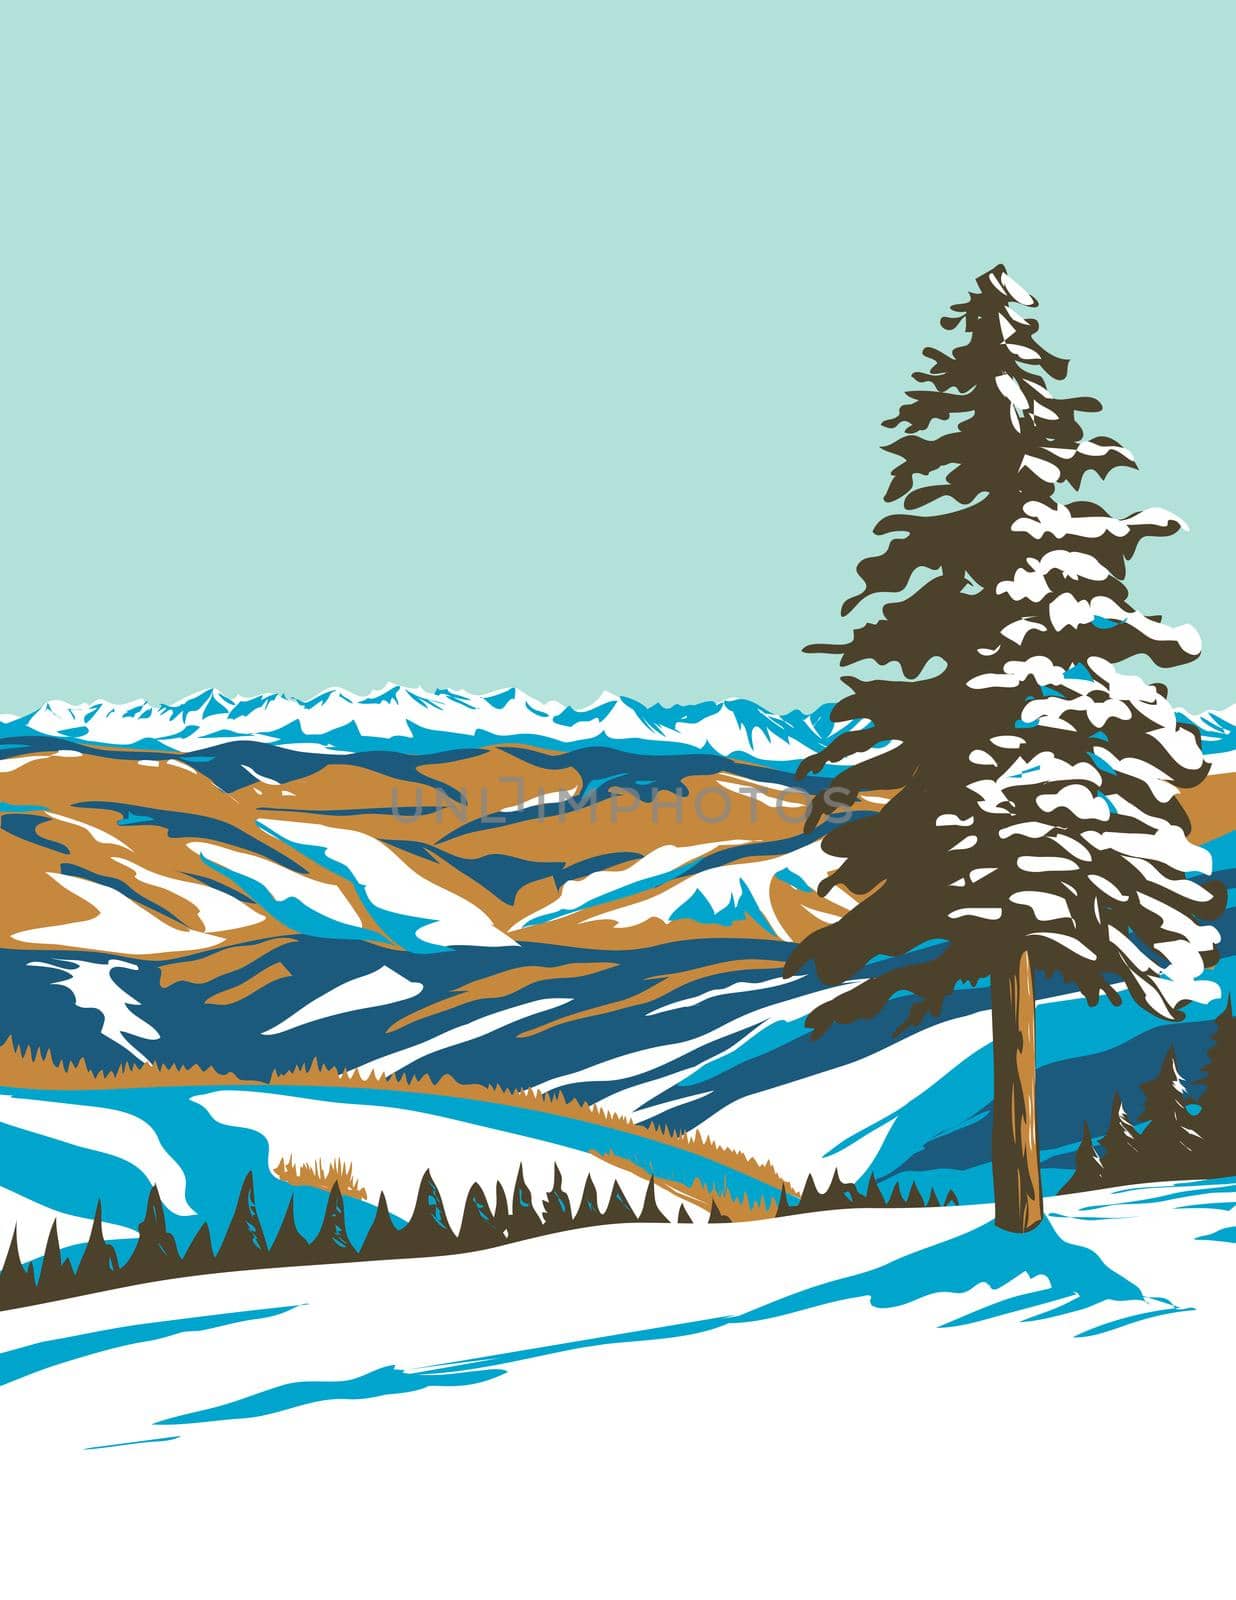 Beaver Creek Ski Resort near Avon Colorado WPA Poster Art by patrimonio